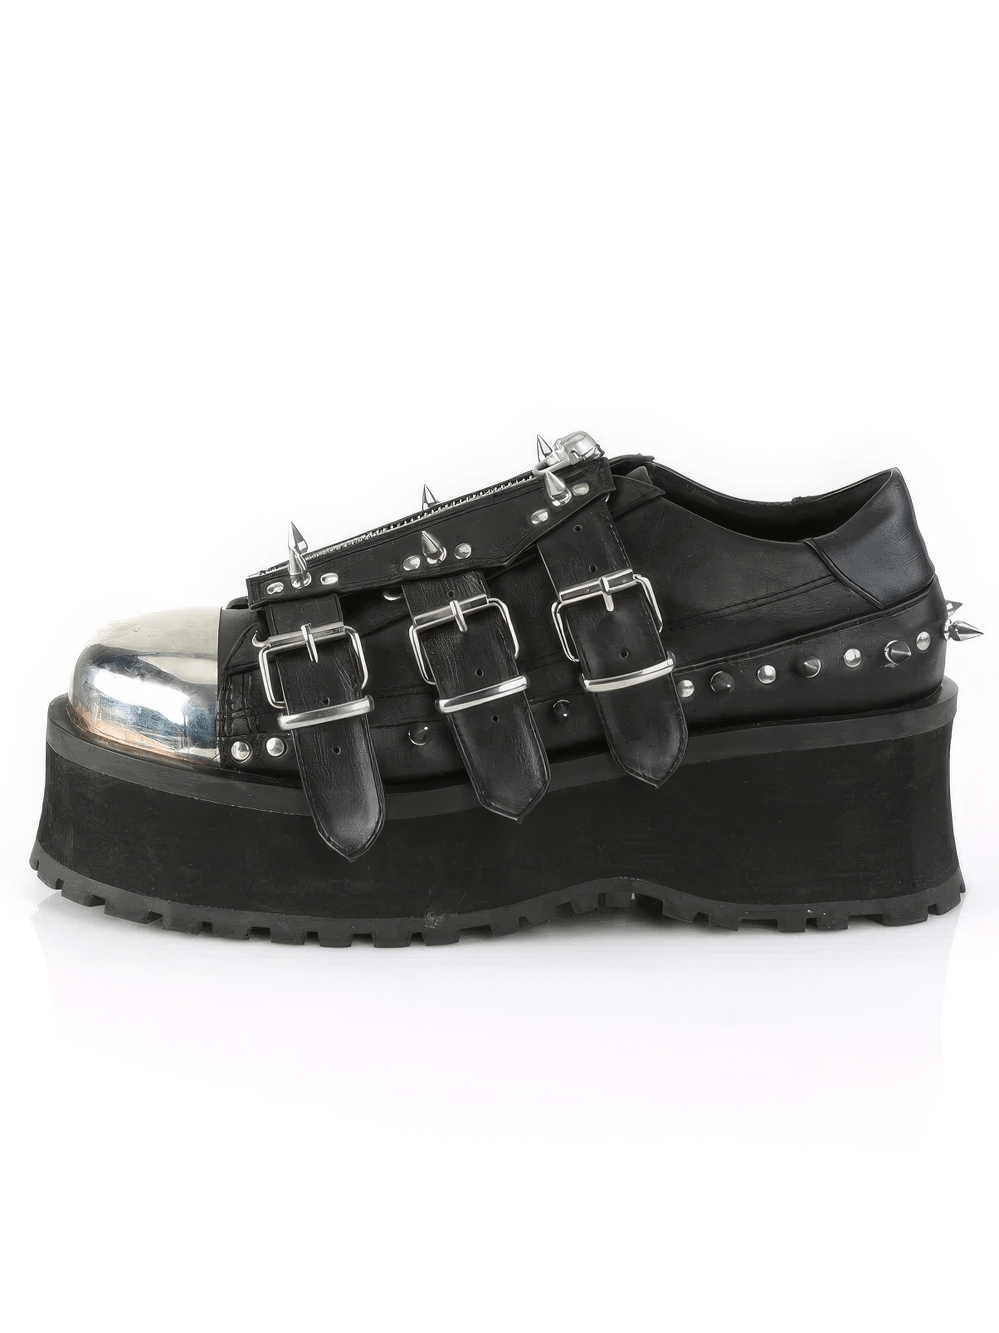 DEMONIA Gothic Platform Shoes with Chrome Toe Cap